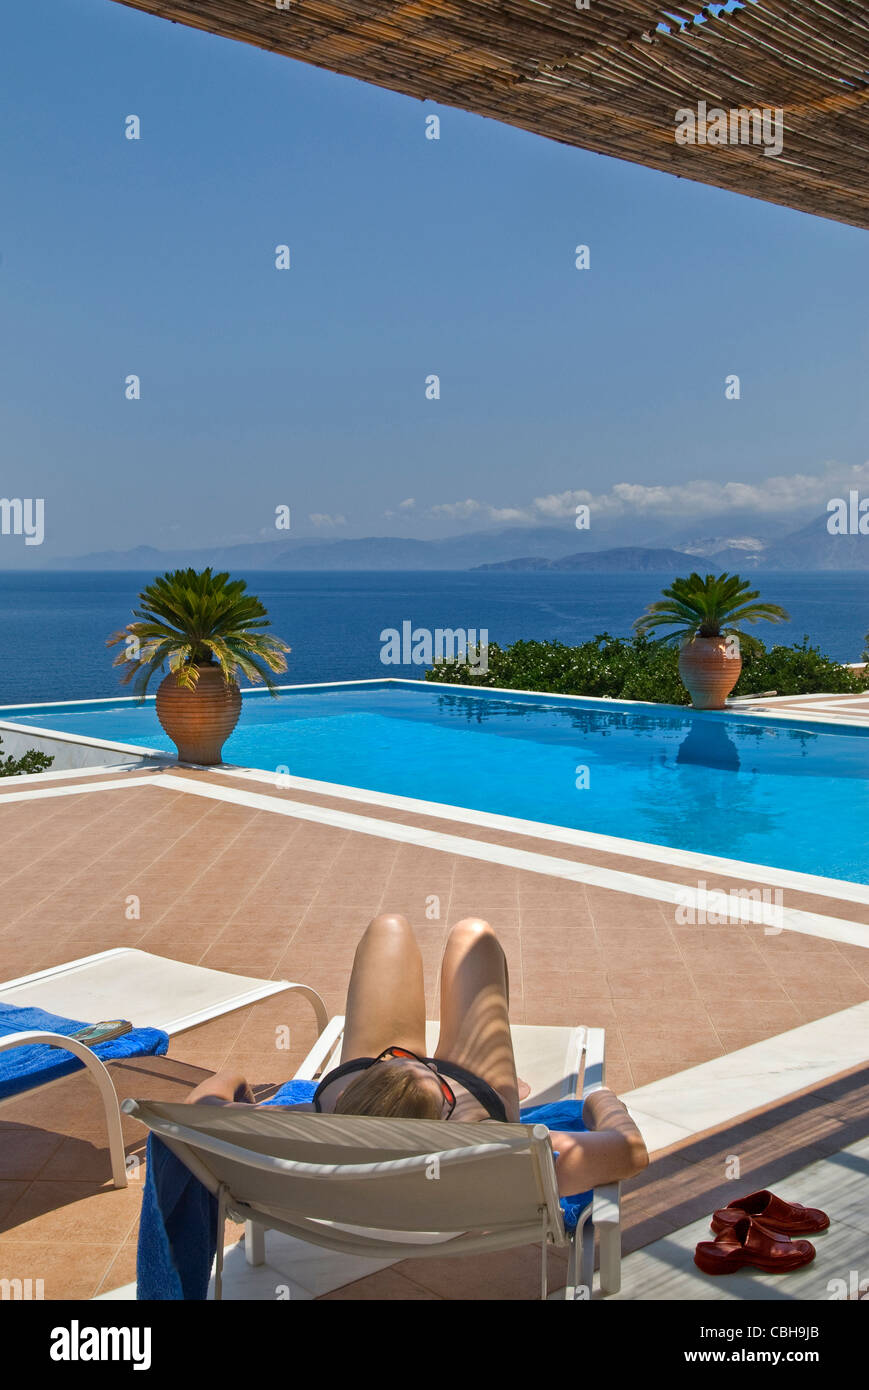 Donna rilassarsi sui lettini prendisole con lusso piscina infinity e costiere eccezionale vista sul mare dietro Foto Stock